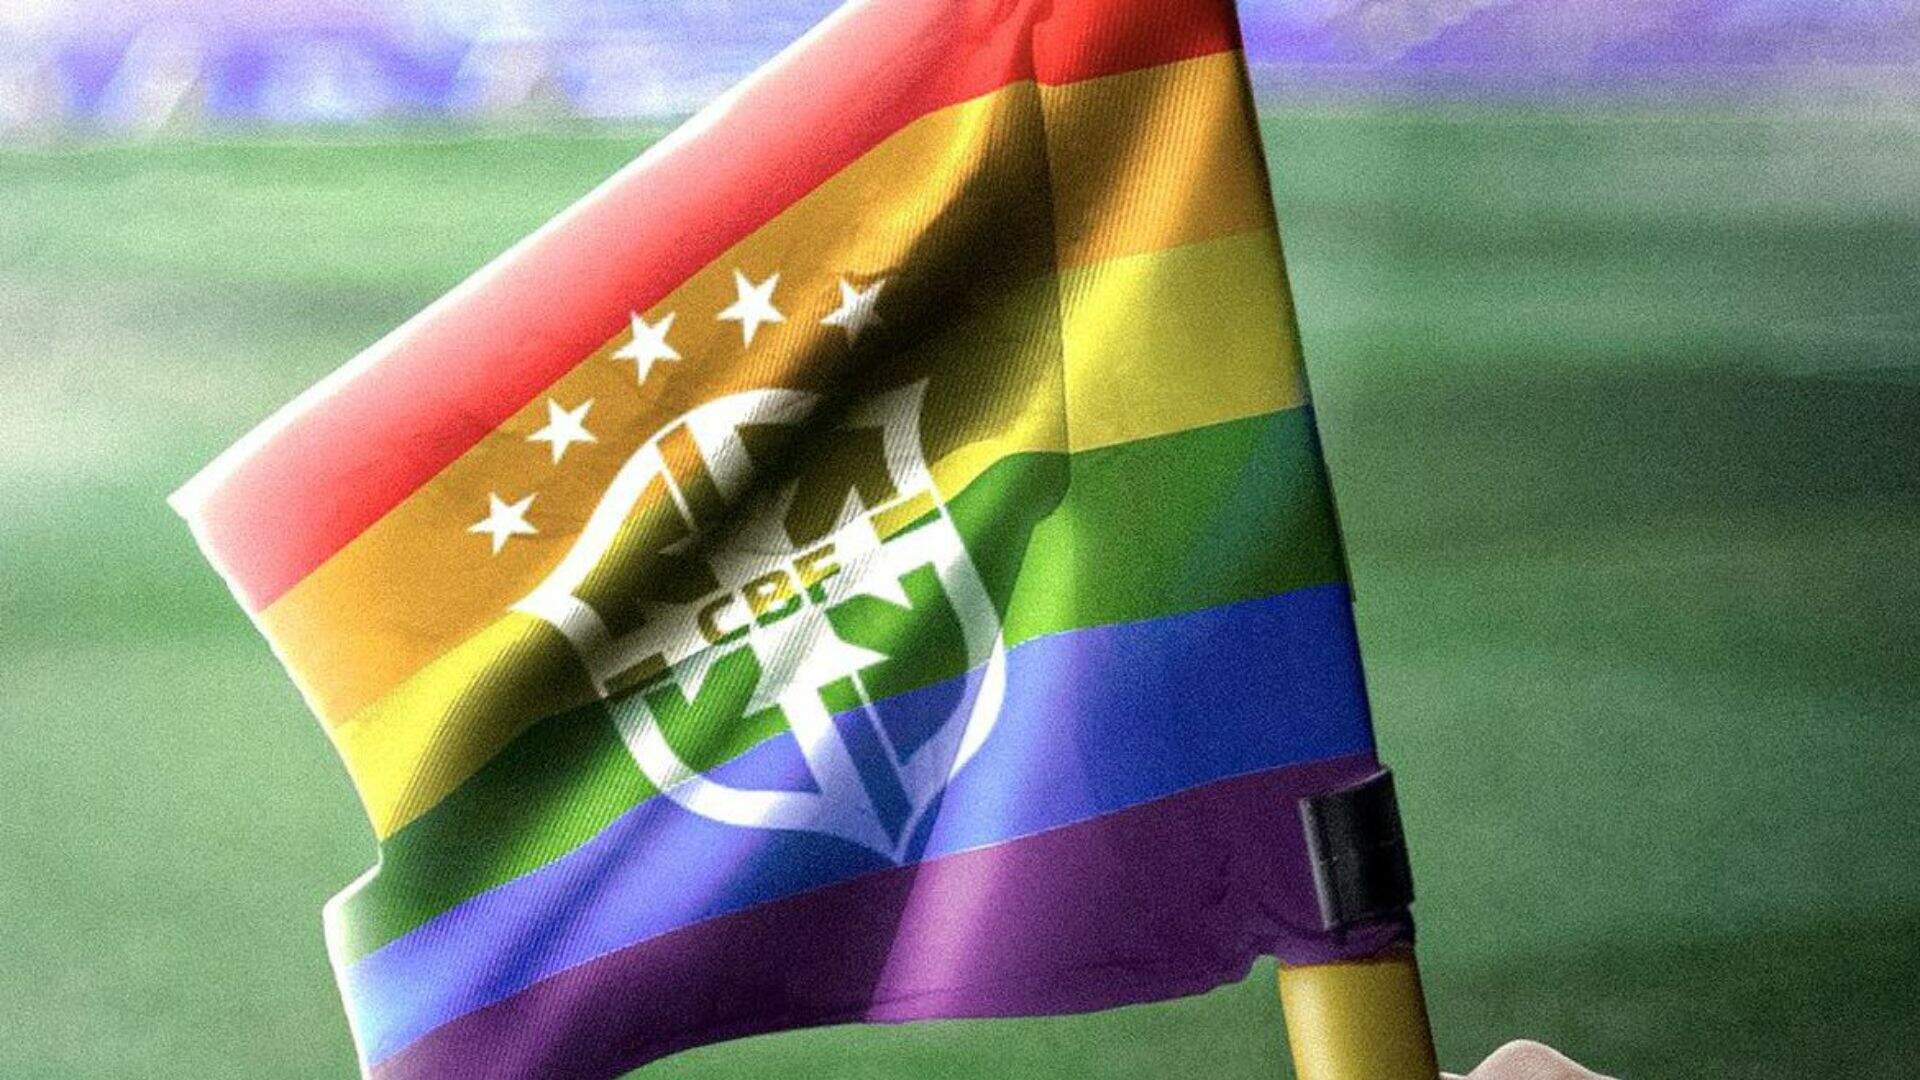 Estudo indica aumento de 76% em casos de homofobia no futebol do país